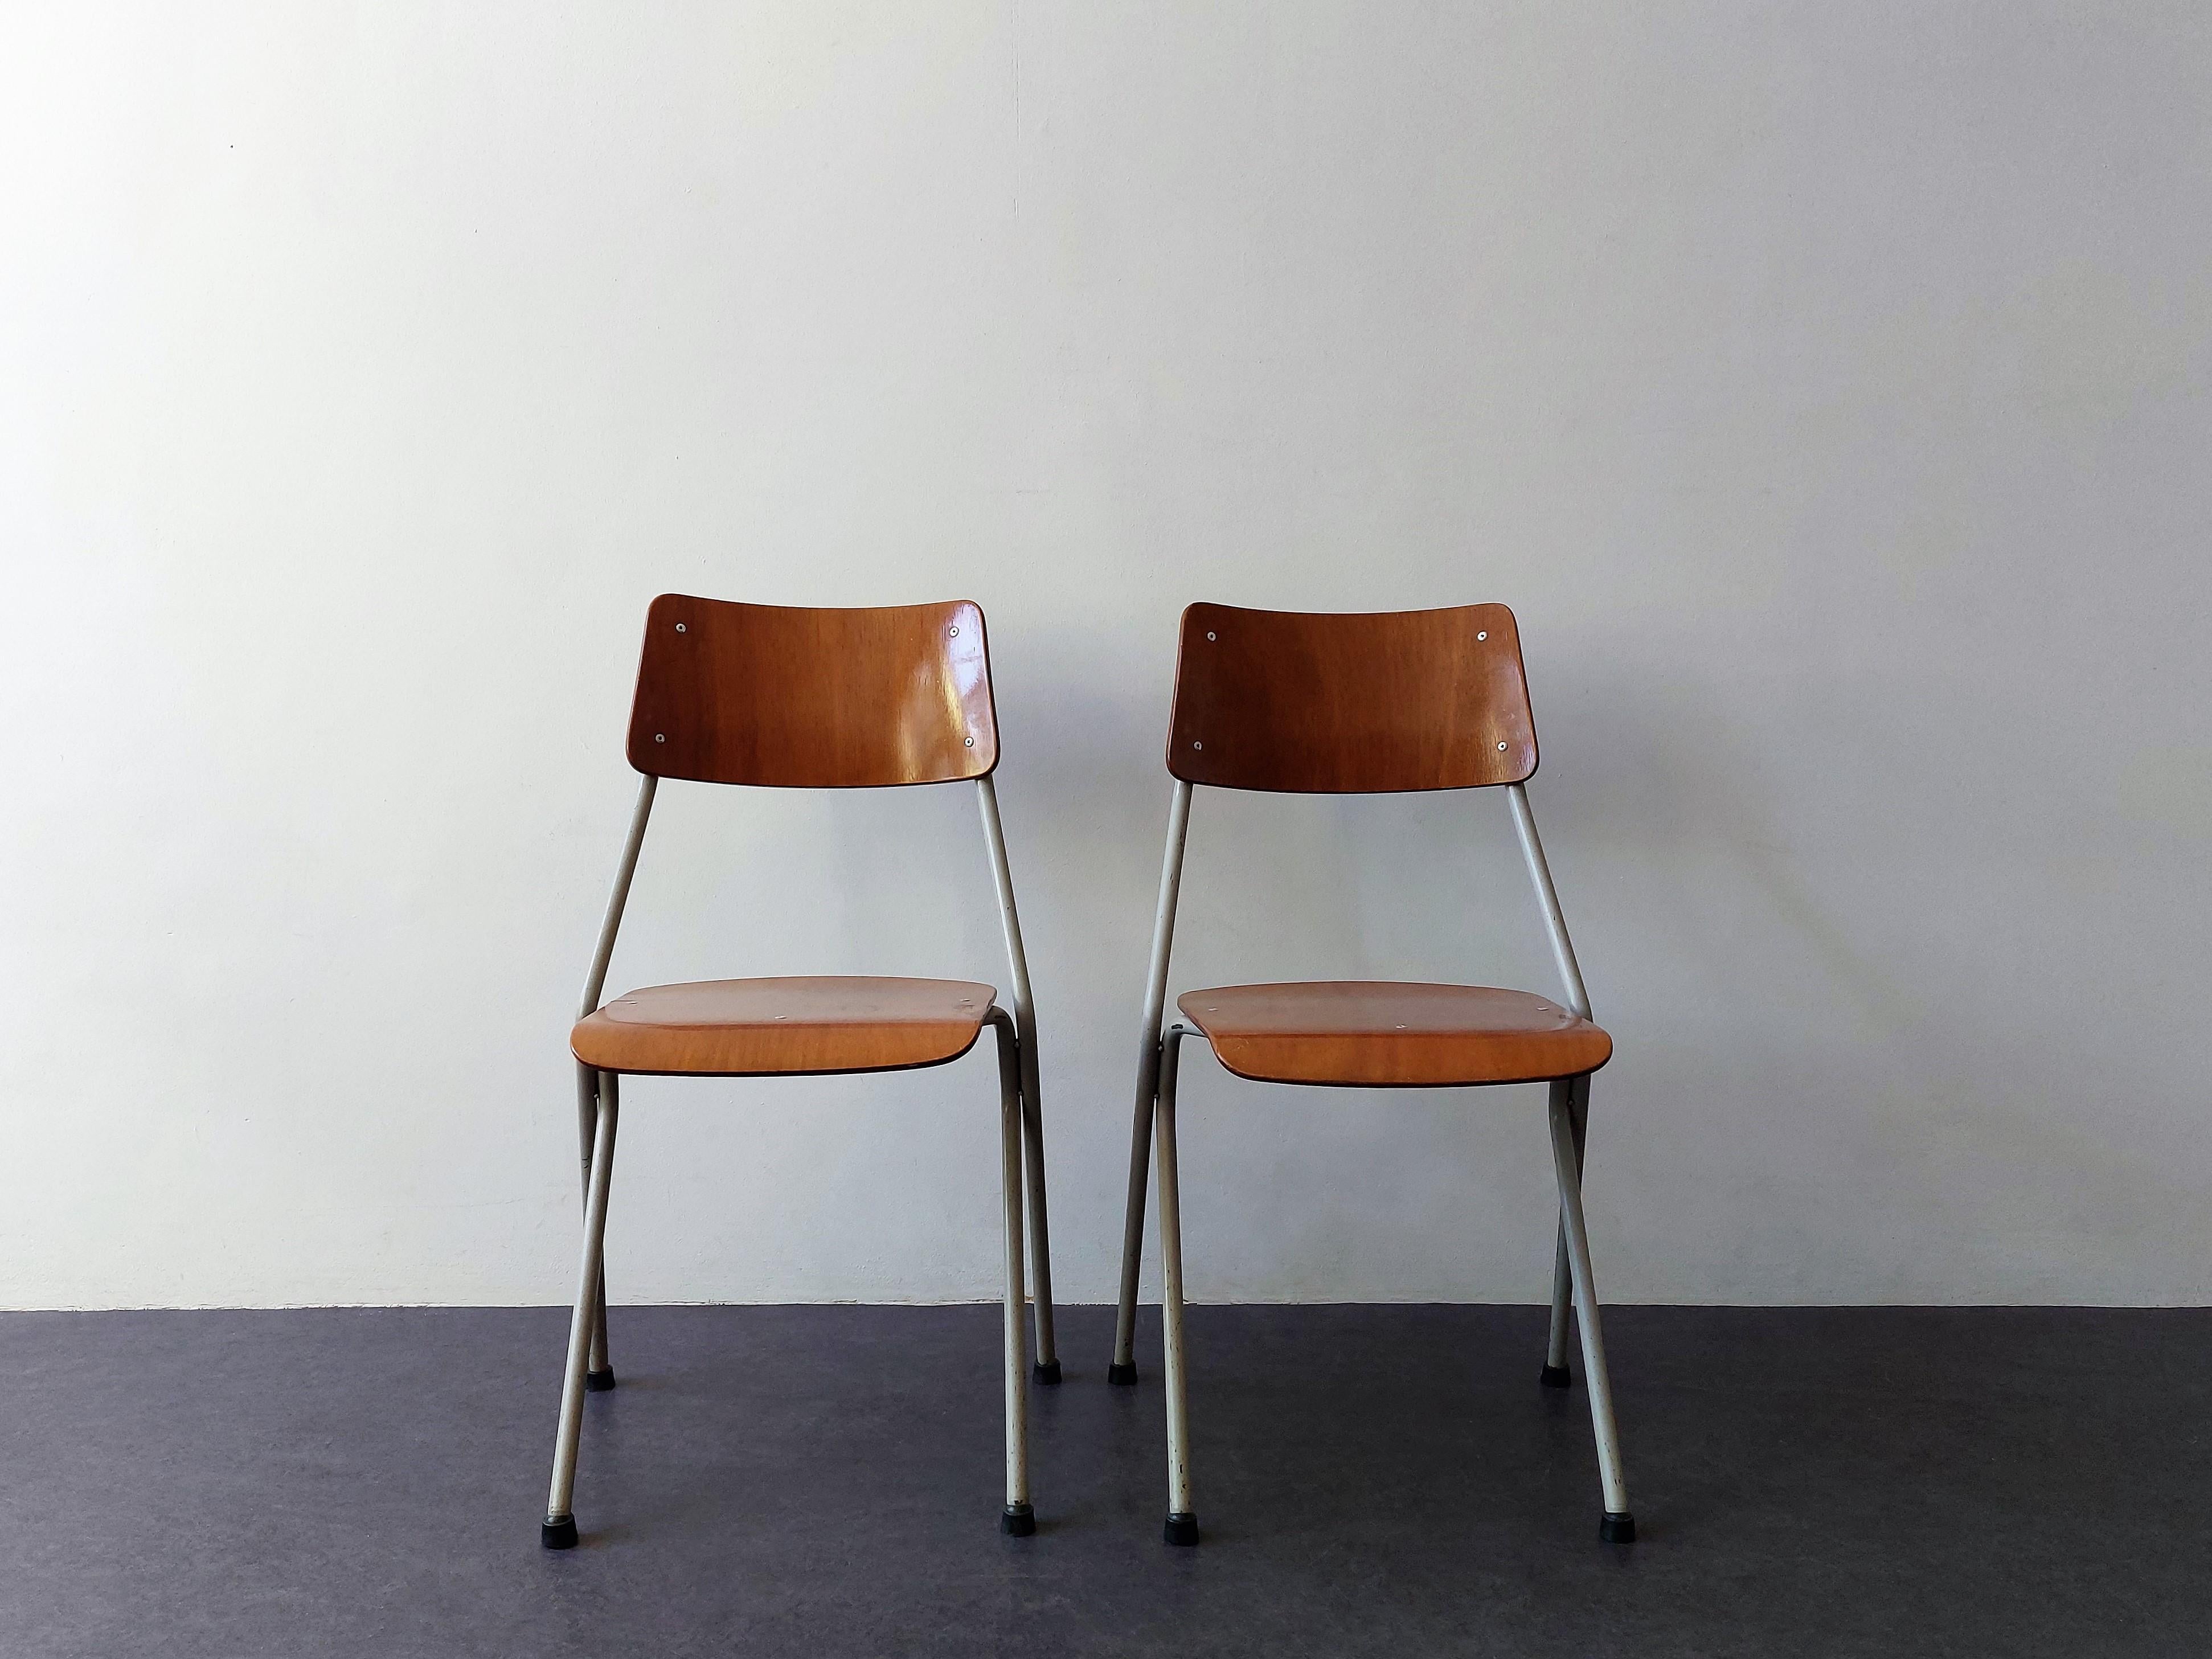 Ce rare ensemble de 2 chaises a été conçu pour Ahrend RIB aux Pays-Bas et fabriqué en 1964. Ils sont marqués de 2 timbres. Un du producteur, Ahrend R.I.B. et un timbre avec la date de fabrication : 11 août 1964. Avec un âge de 58 ans, ces chaises